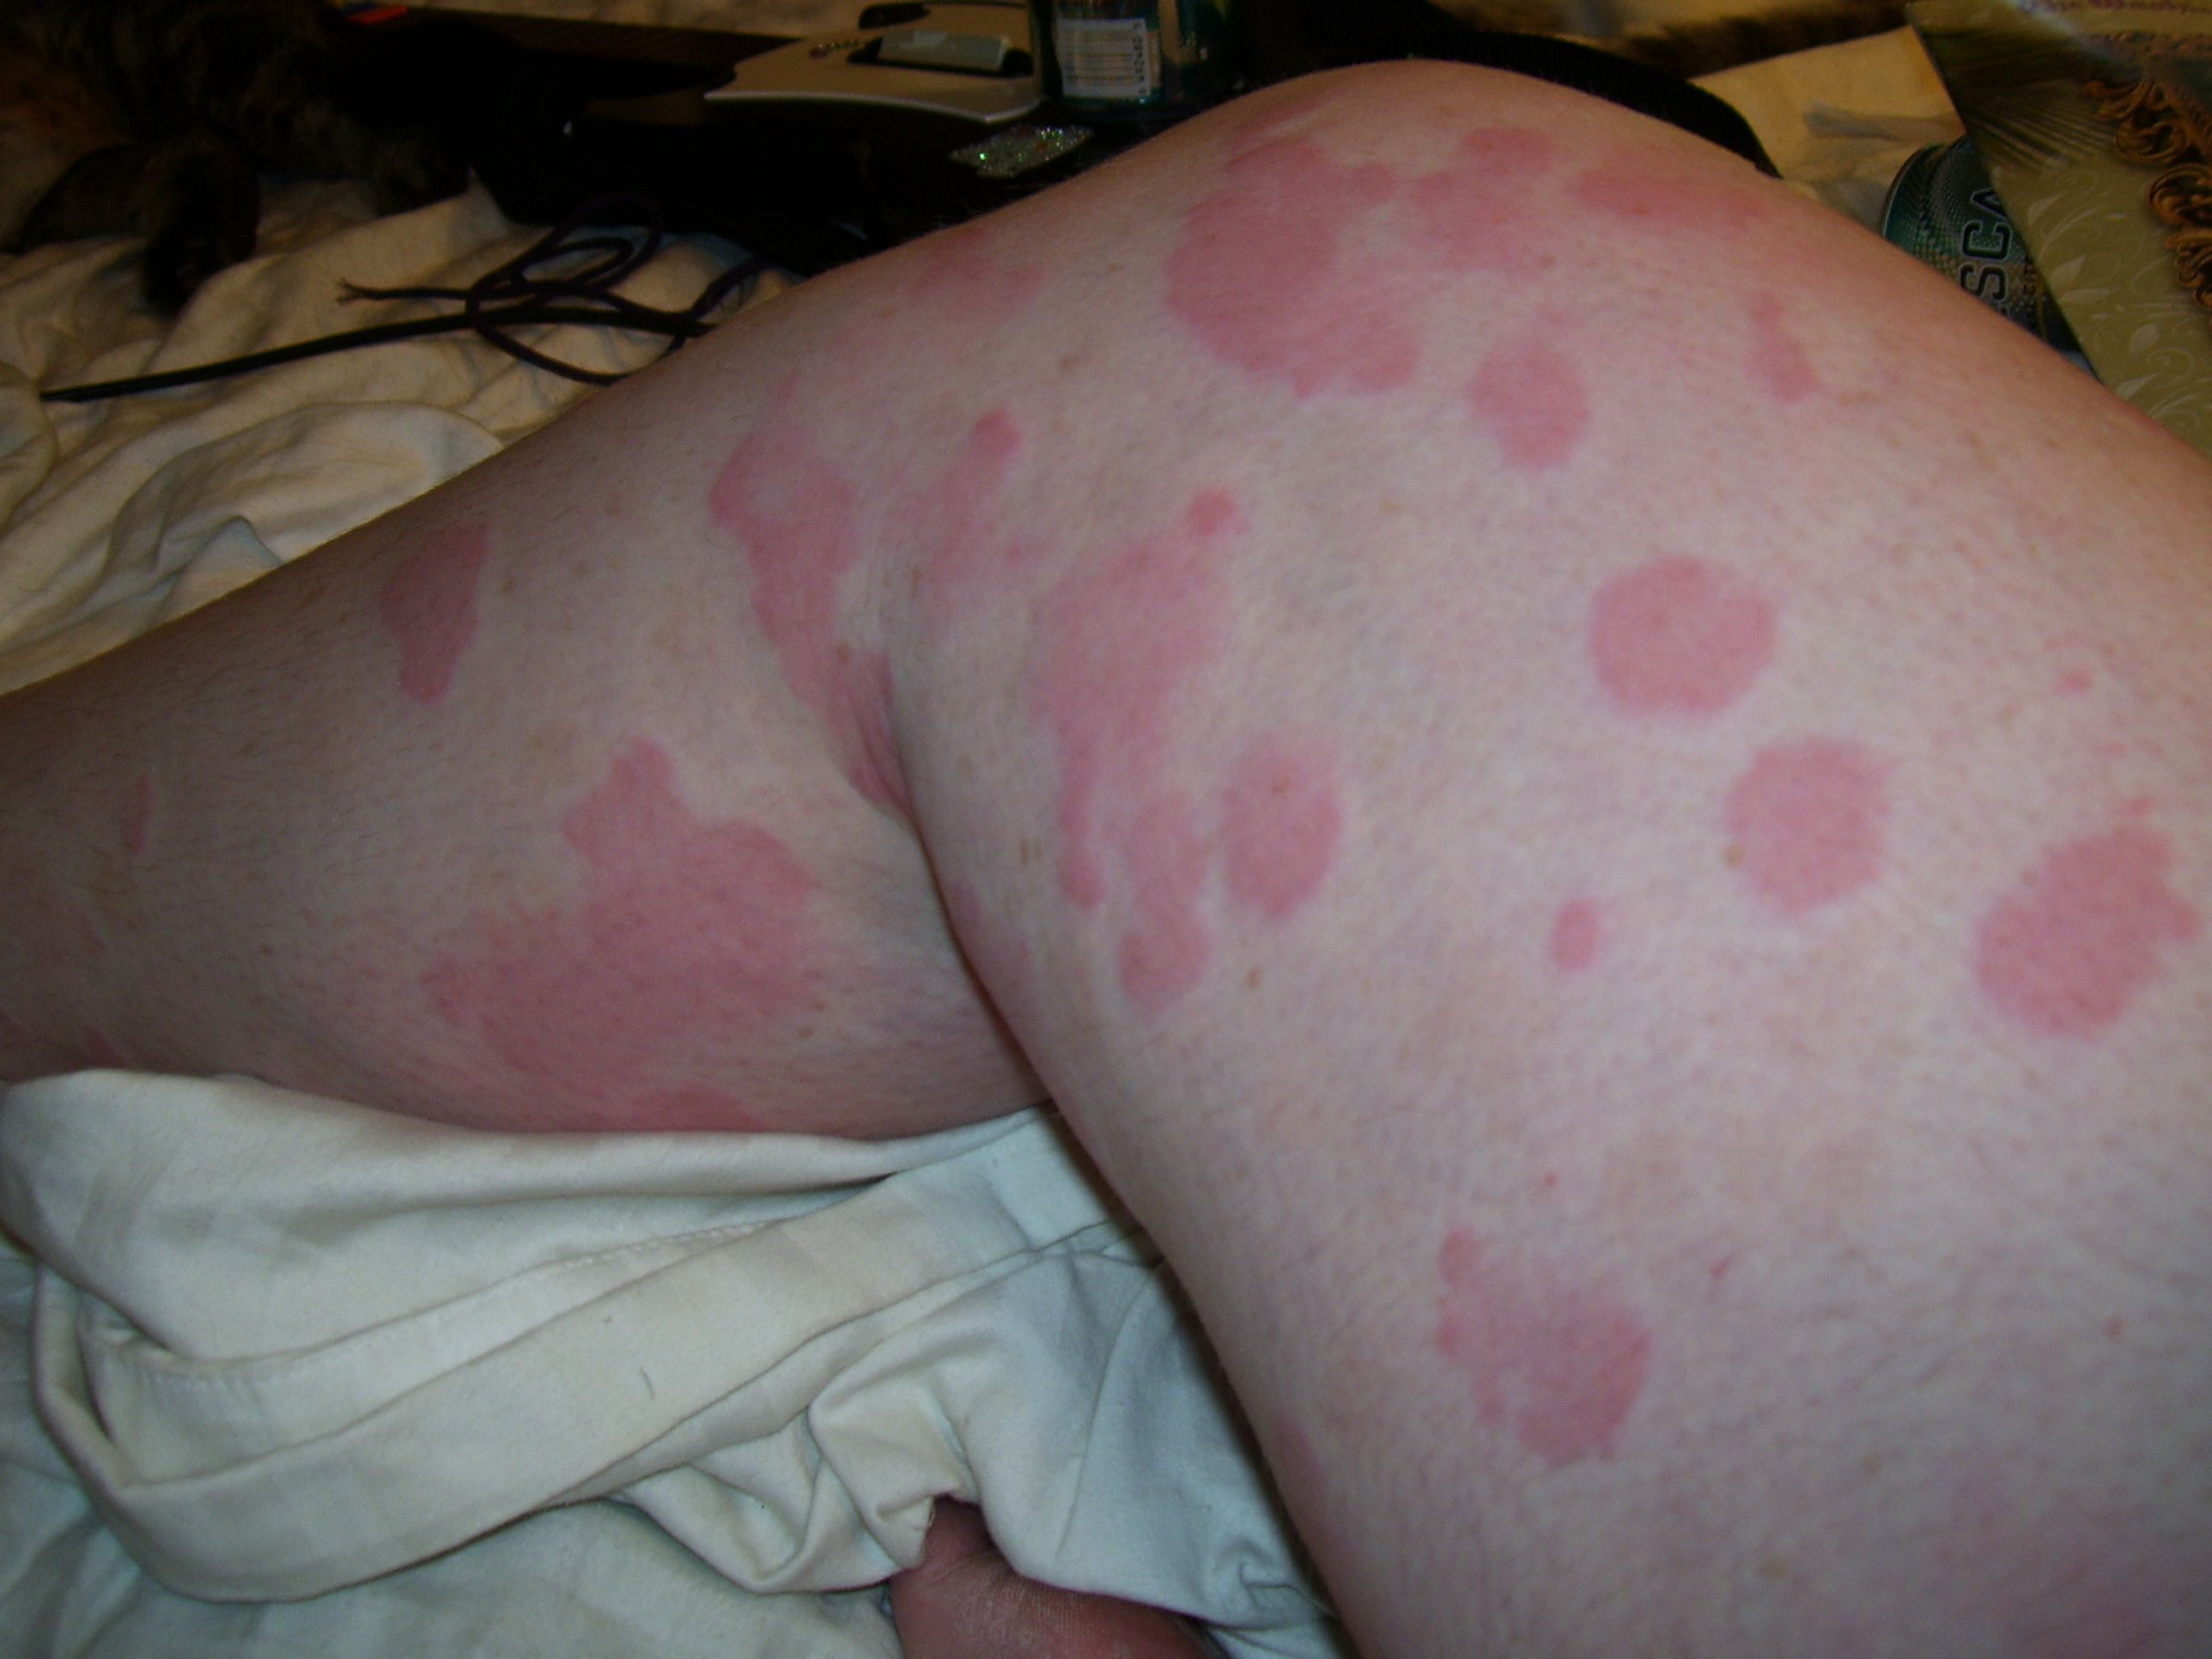 hives rash